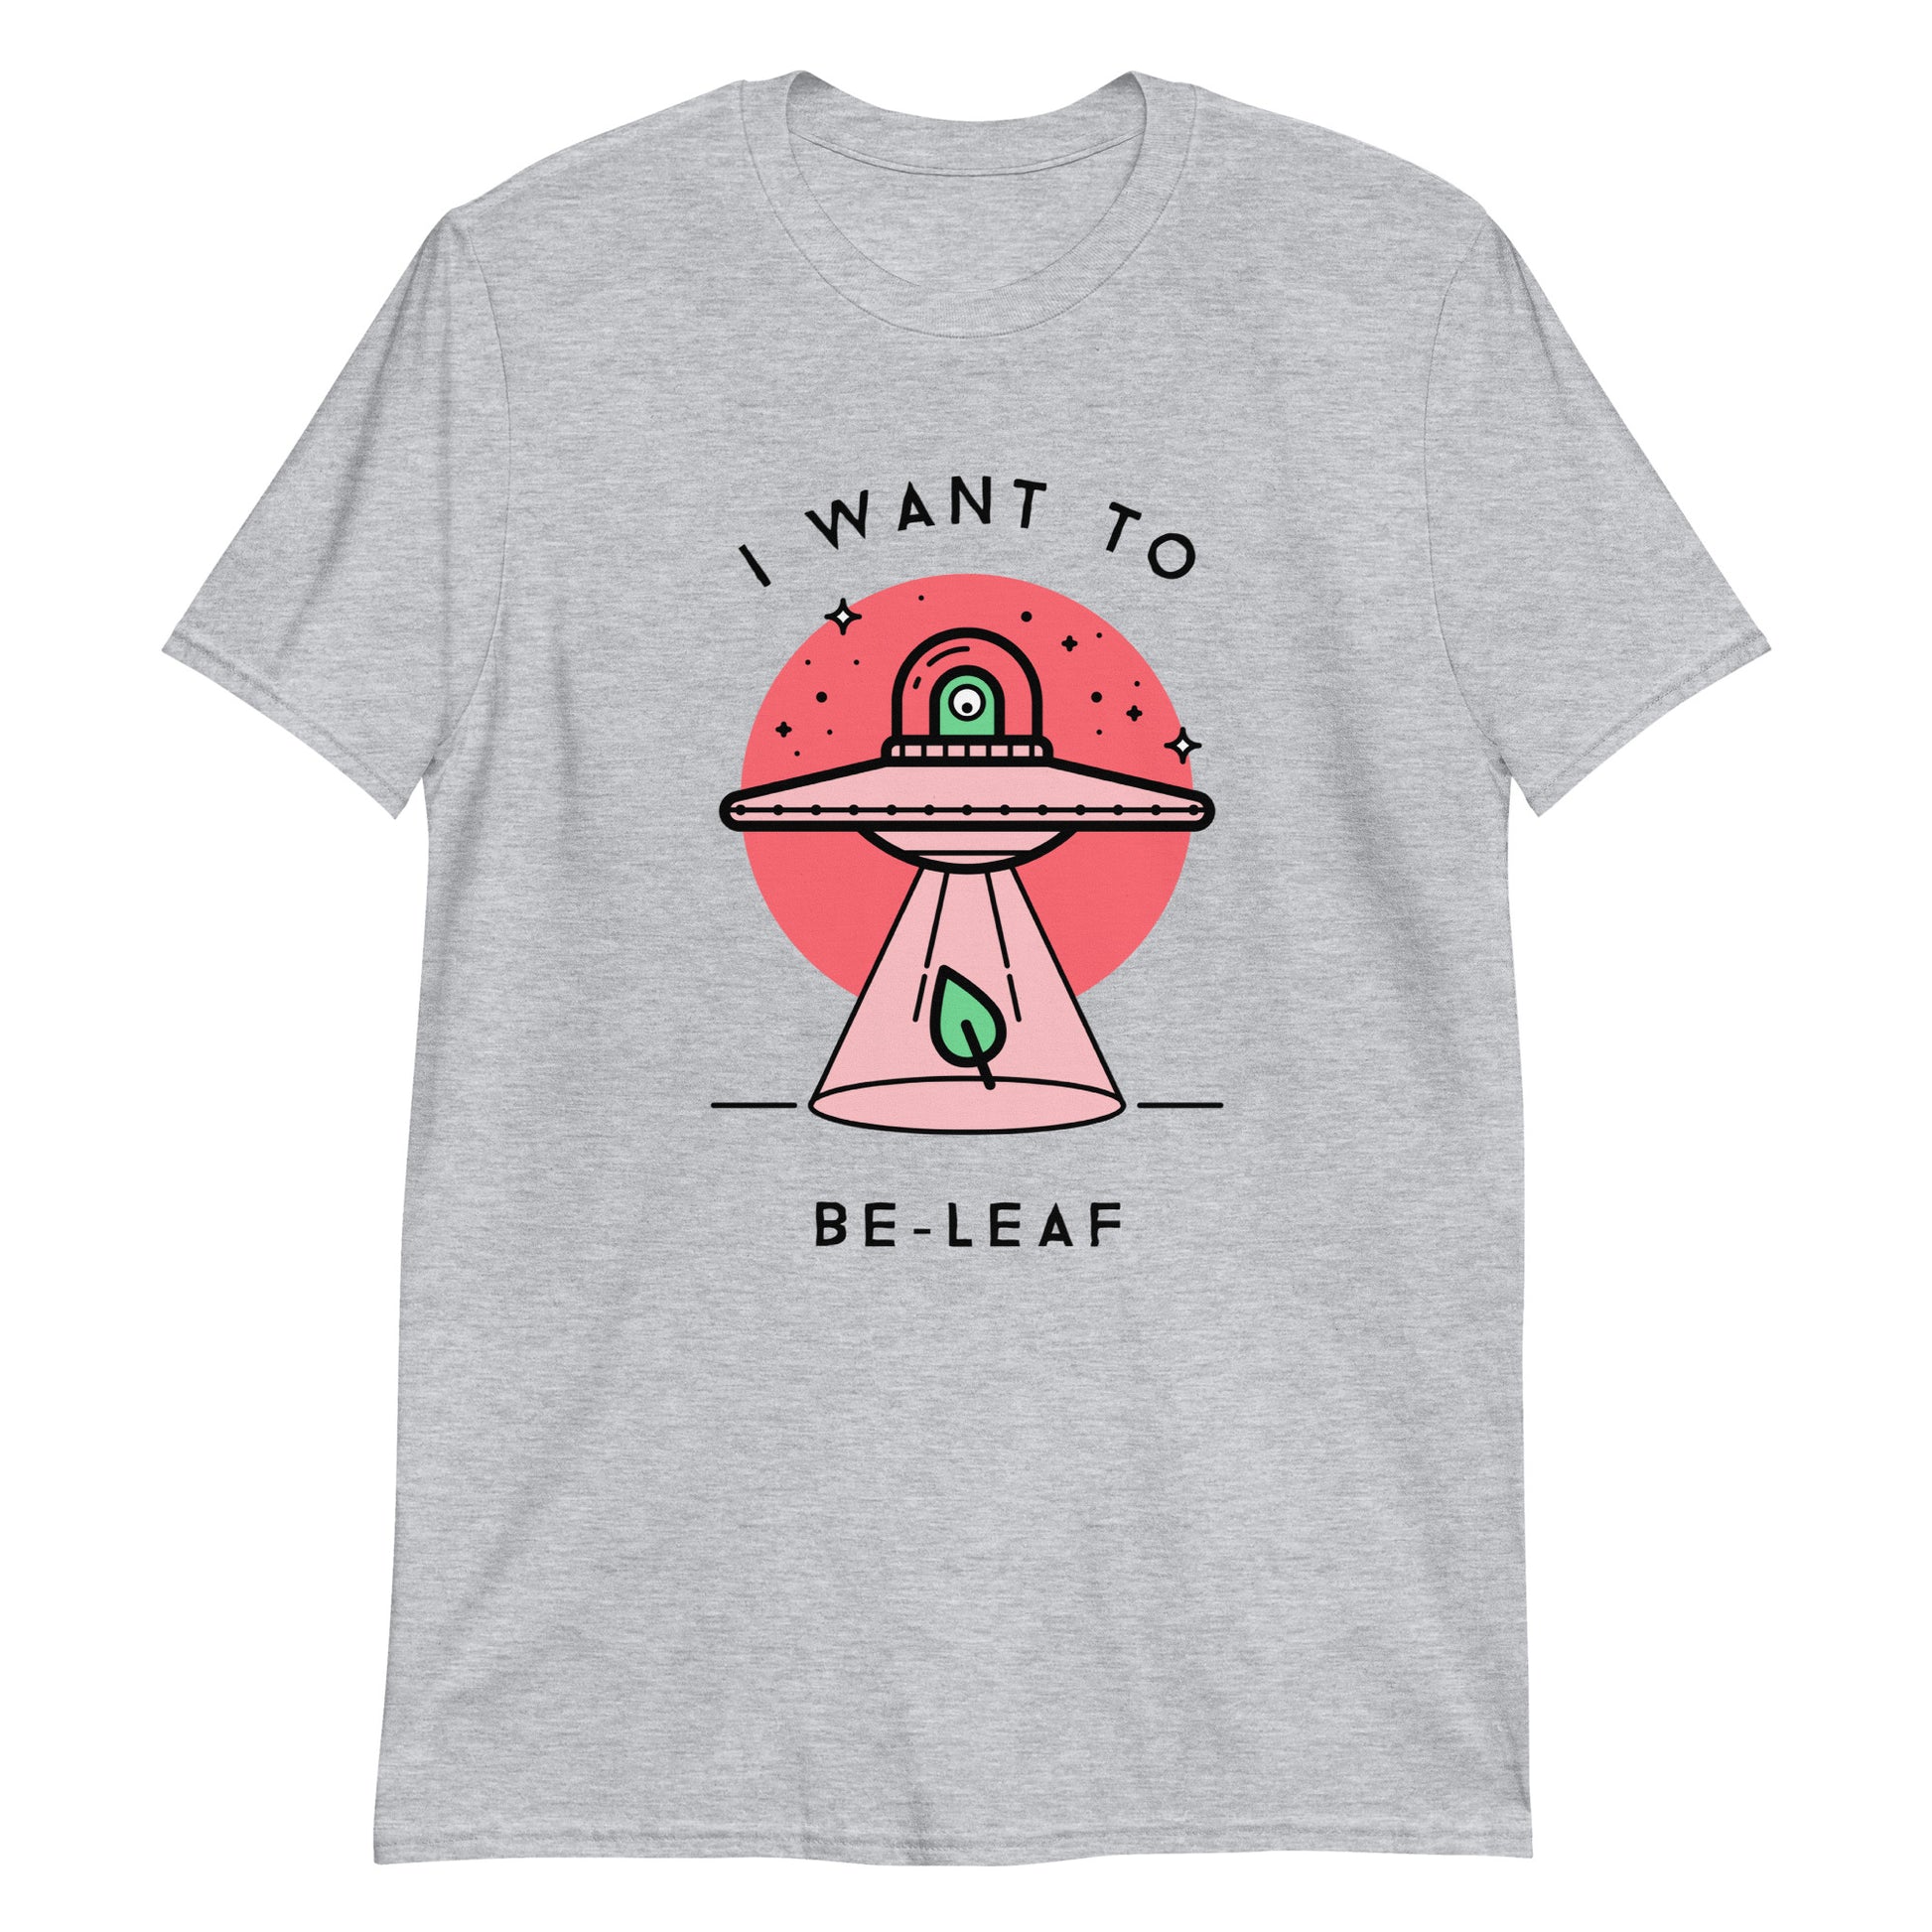 I Want To Be-Leaf, UFO - Short-Sleeve Unisex T-Shirt Sport Grey Unisex T-shirt Sci Fi